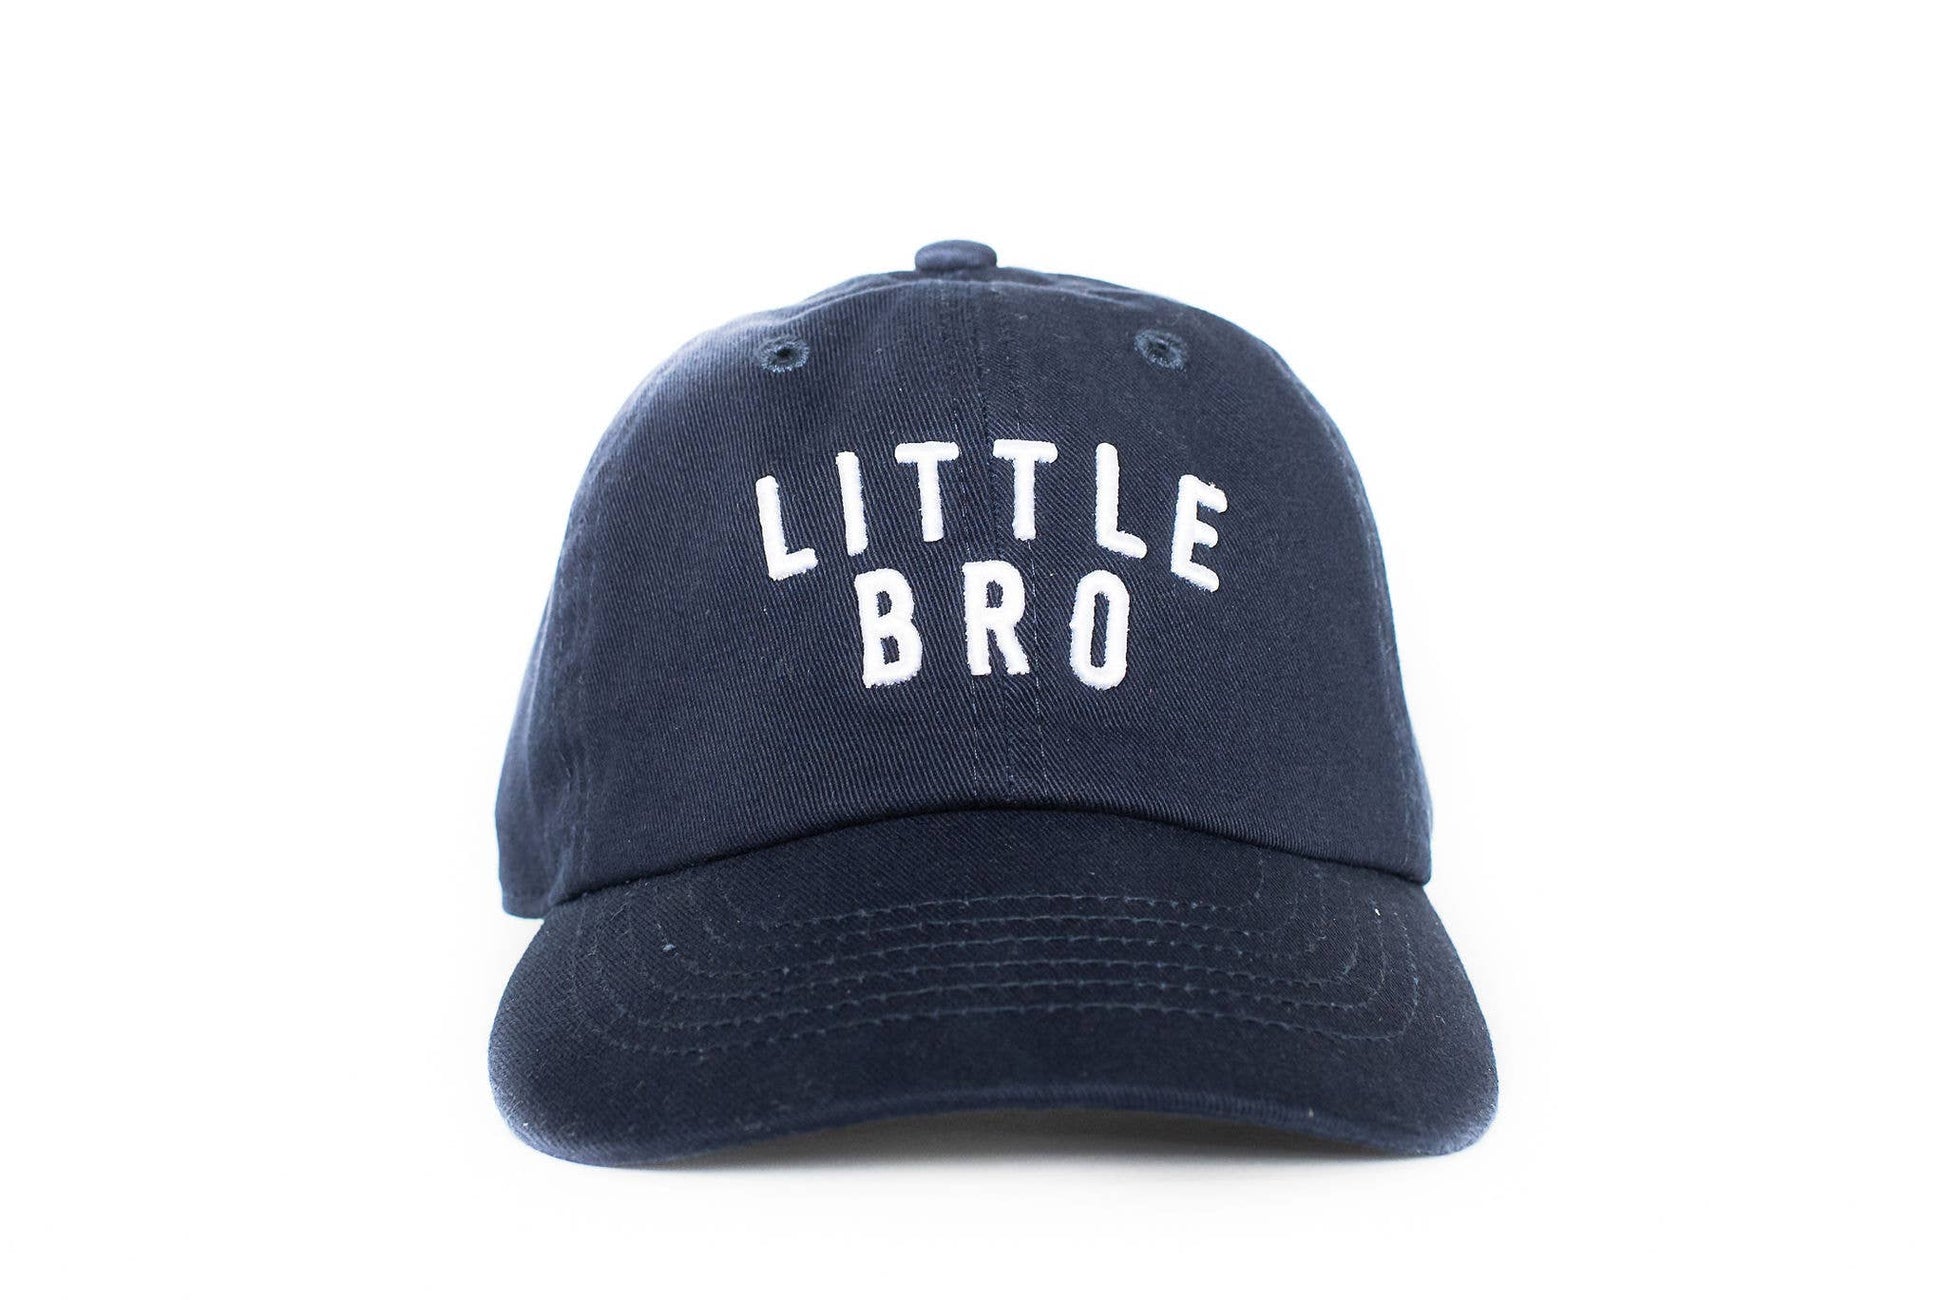 Little Bro Hat-Navy - Einstein's Attic